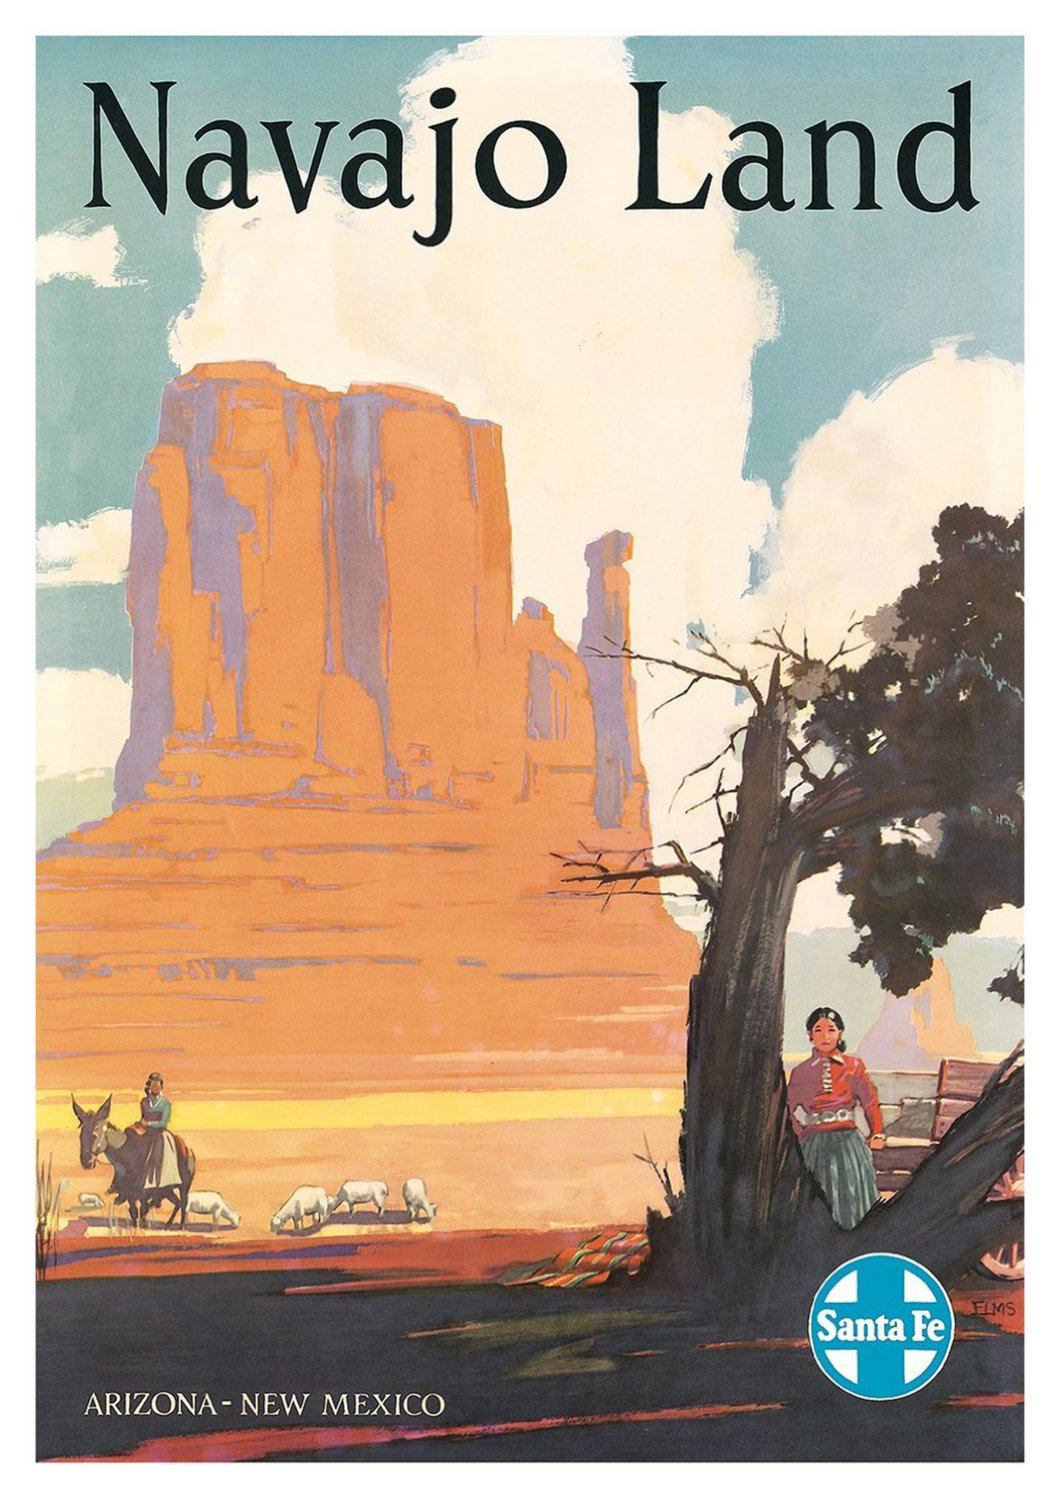 NAVAJO LAND POSTER: Vintage Native American Travel Print - Pimlico Prints